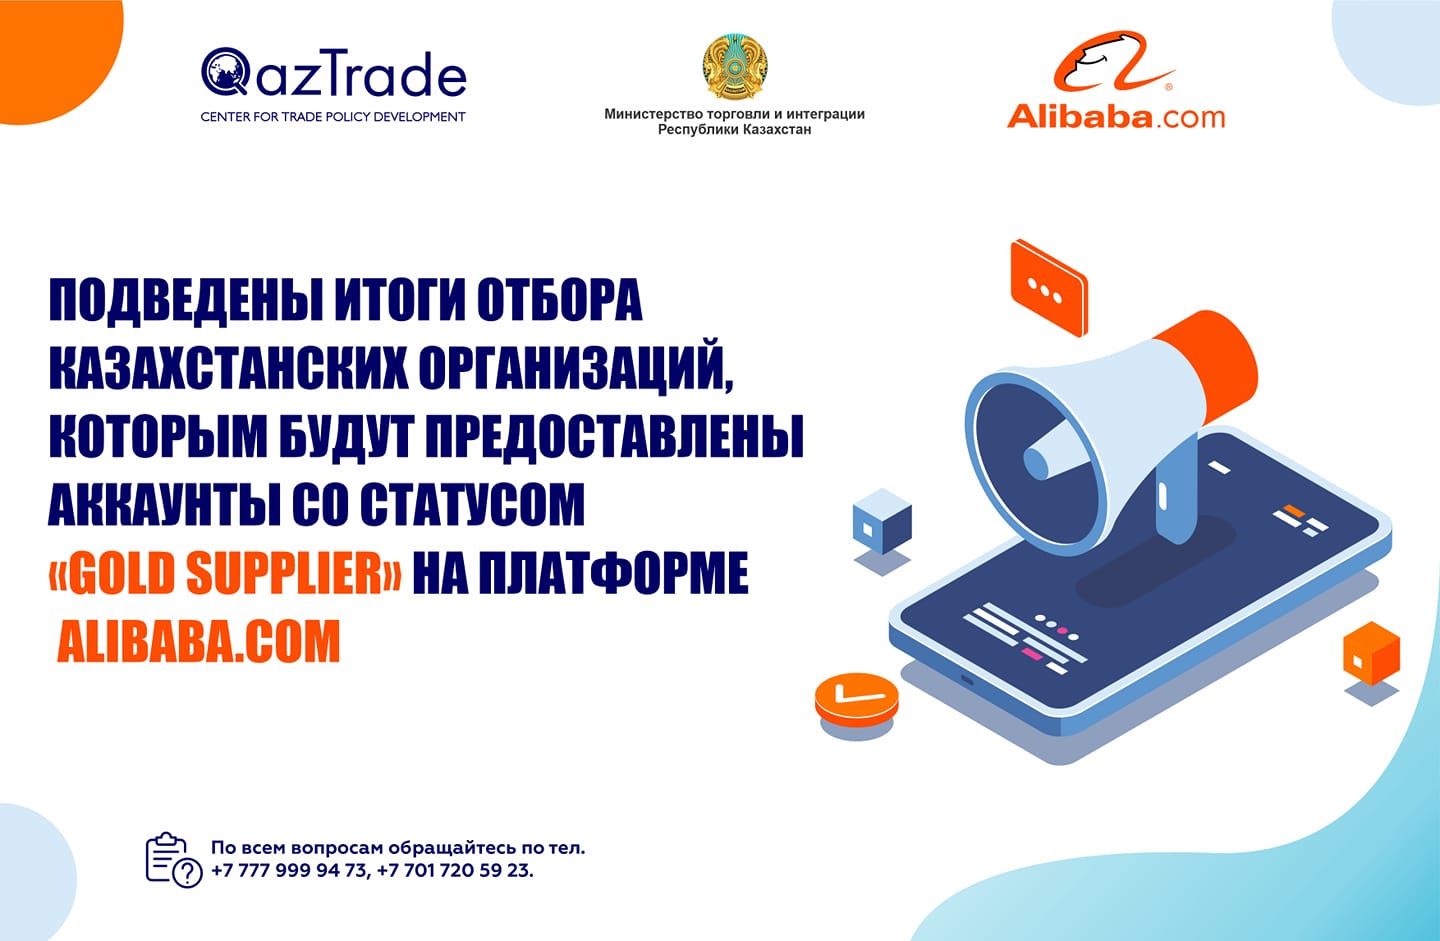 24 компании из Казахстана будут представлены на площадке Alibaba.com